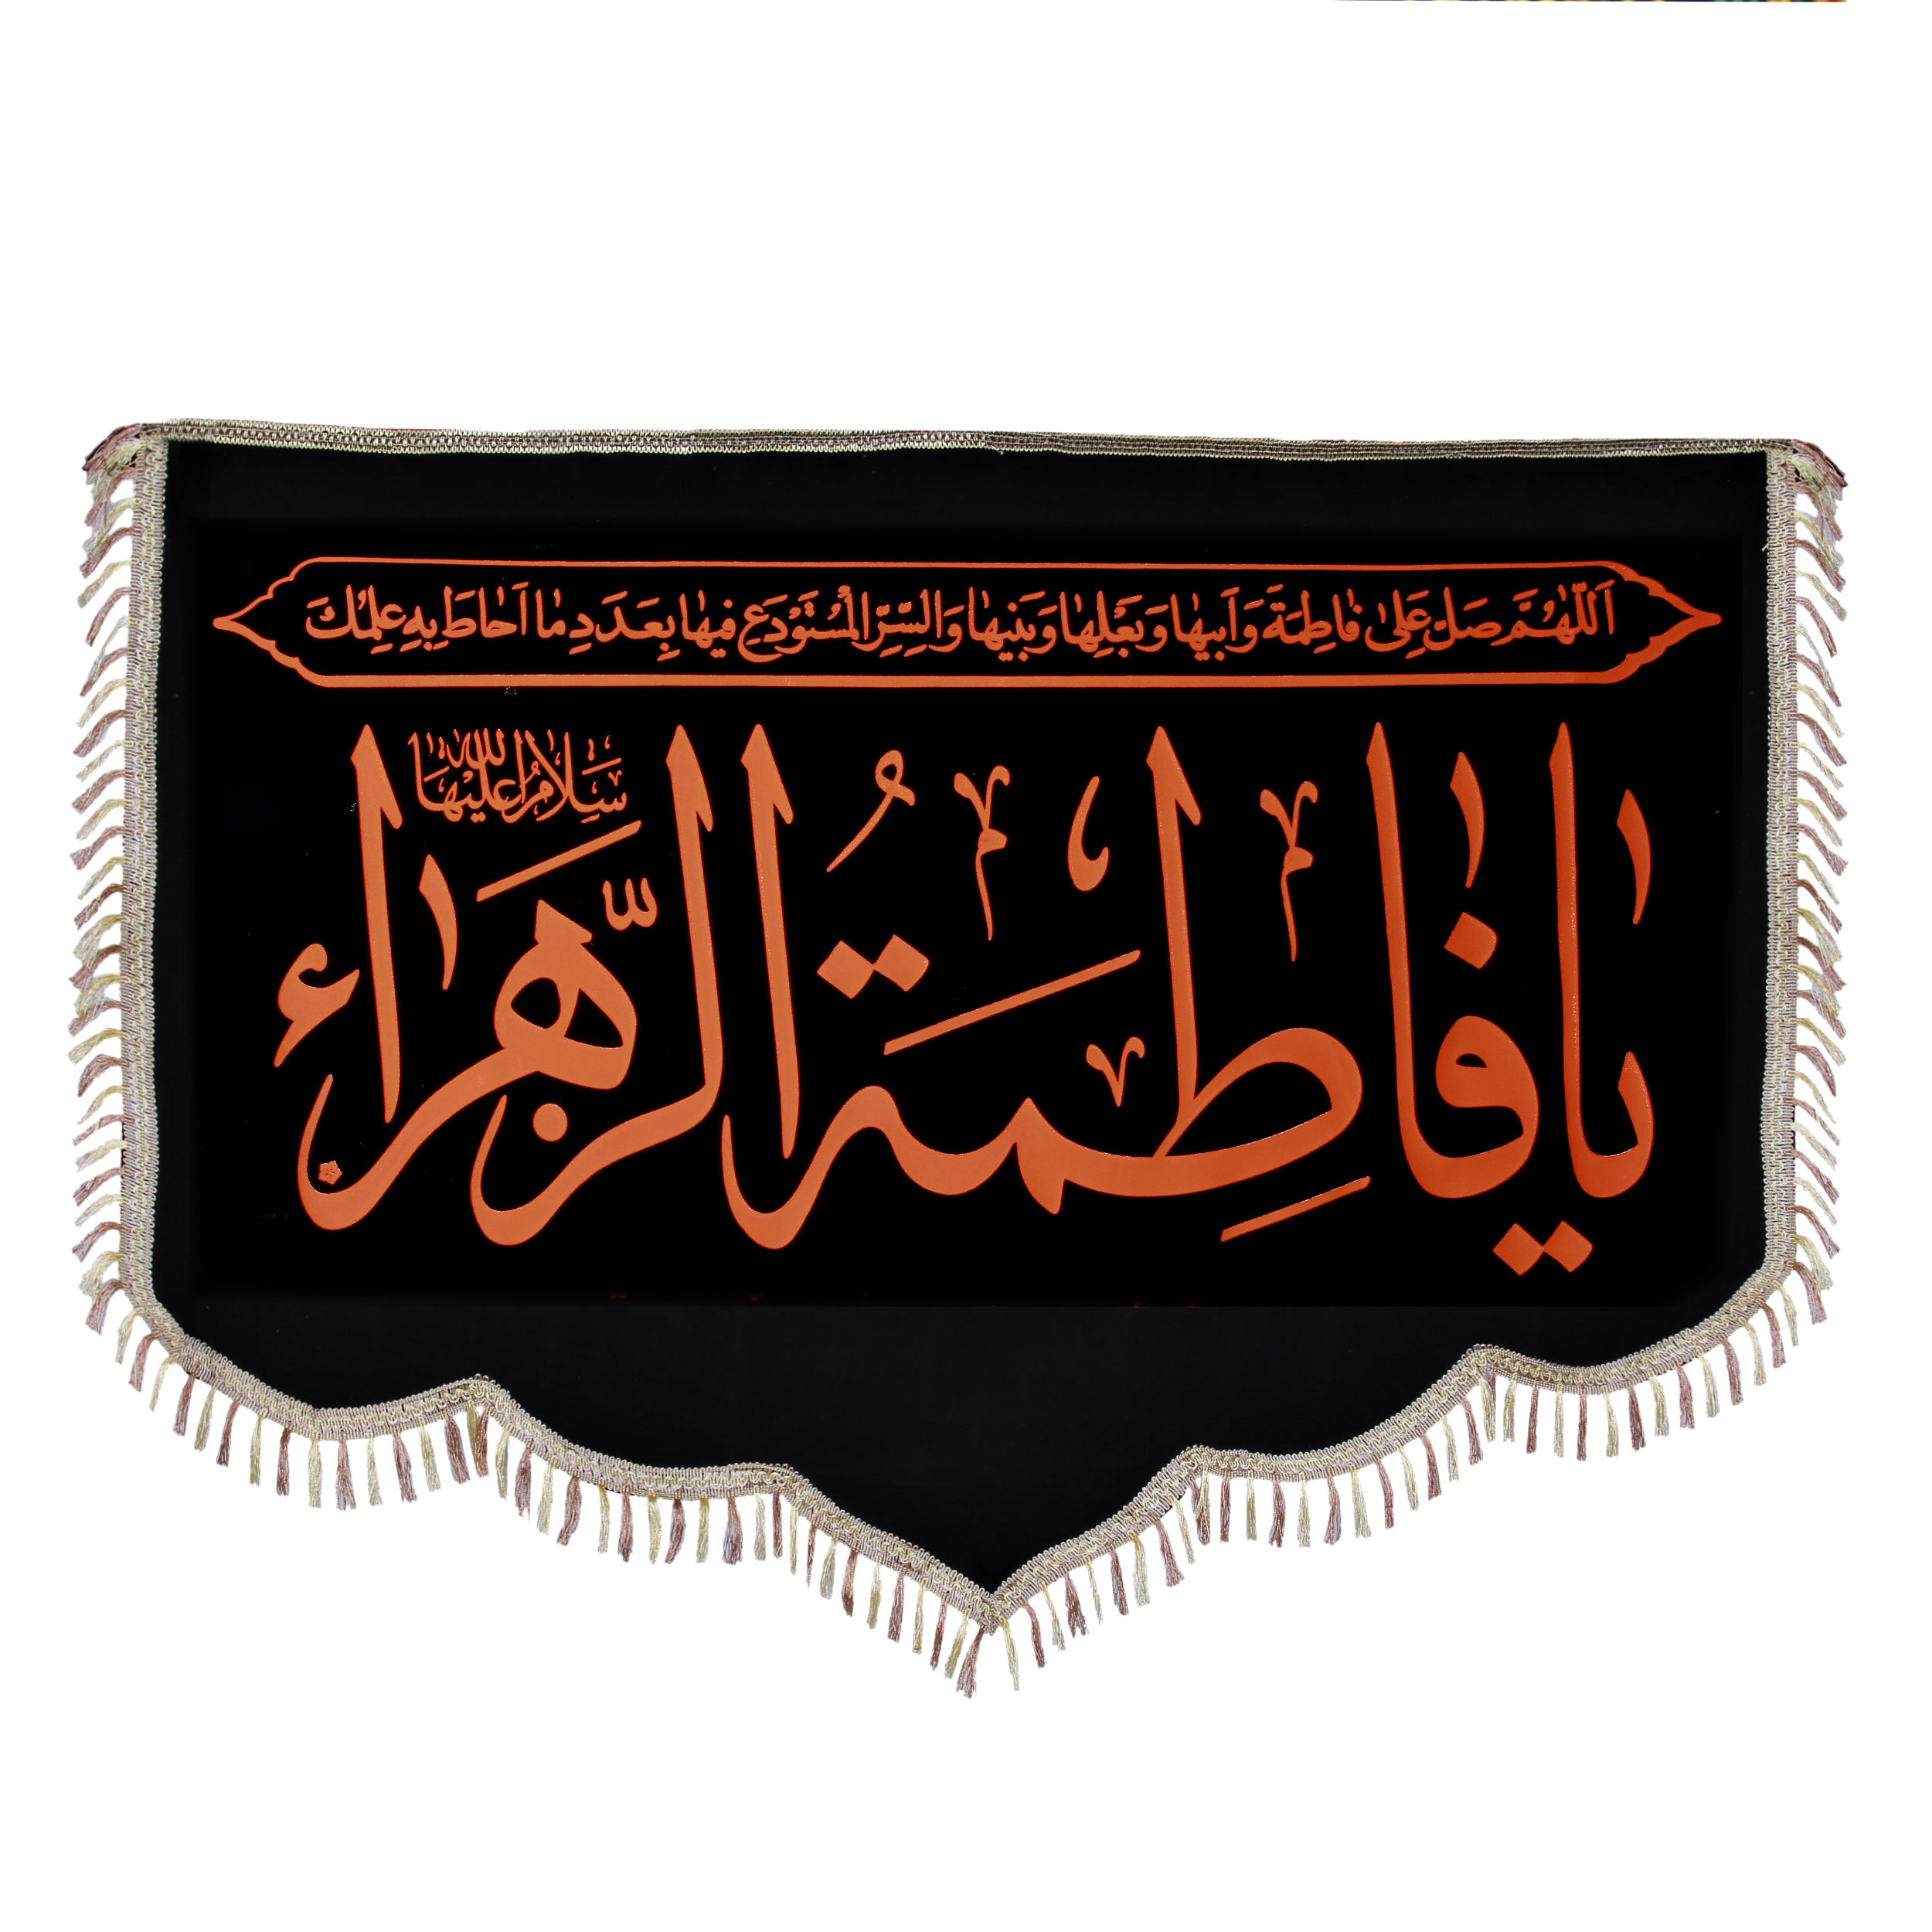    پرچم طرح یا فاطمه الزهرا کد PAR-115